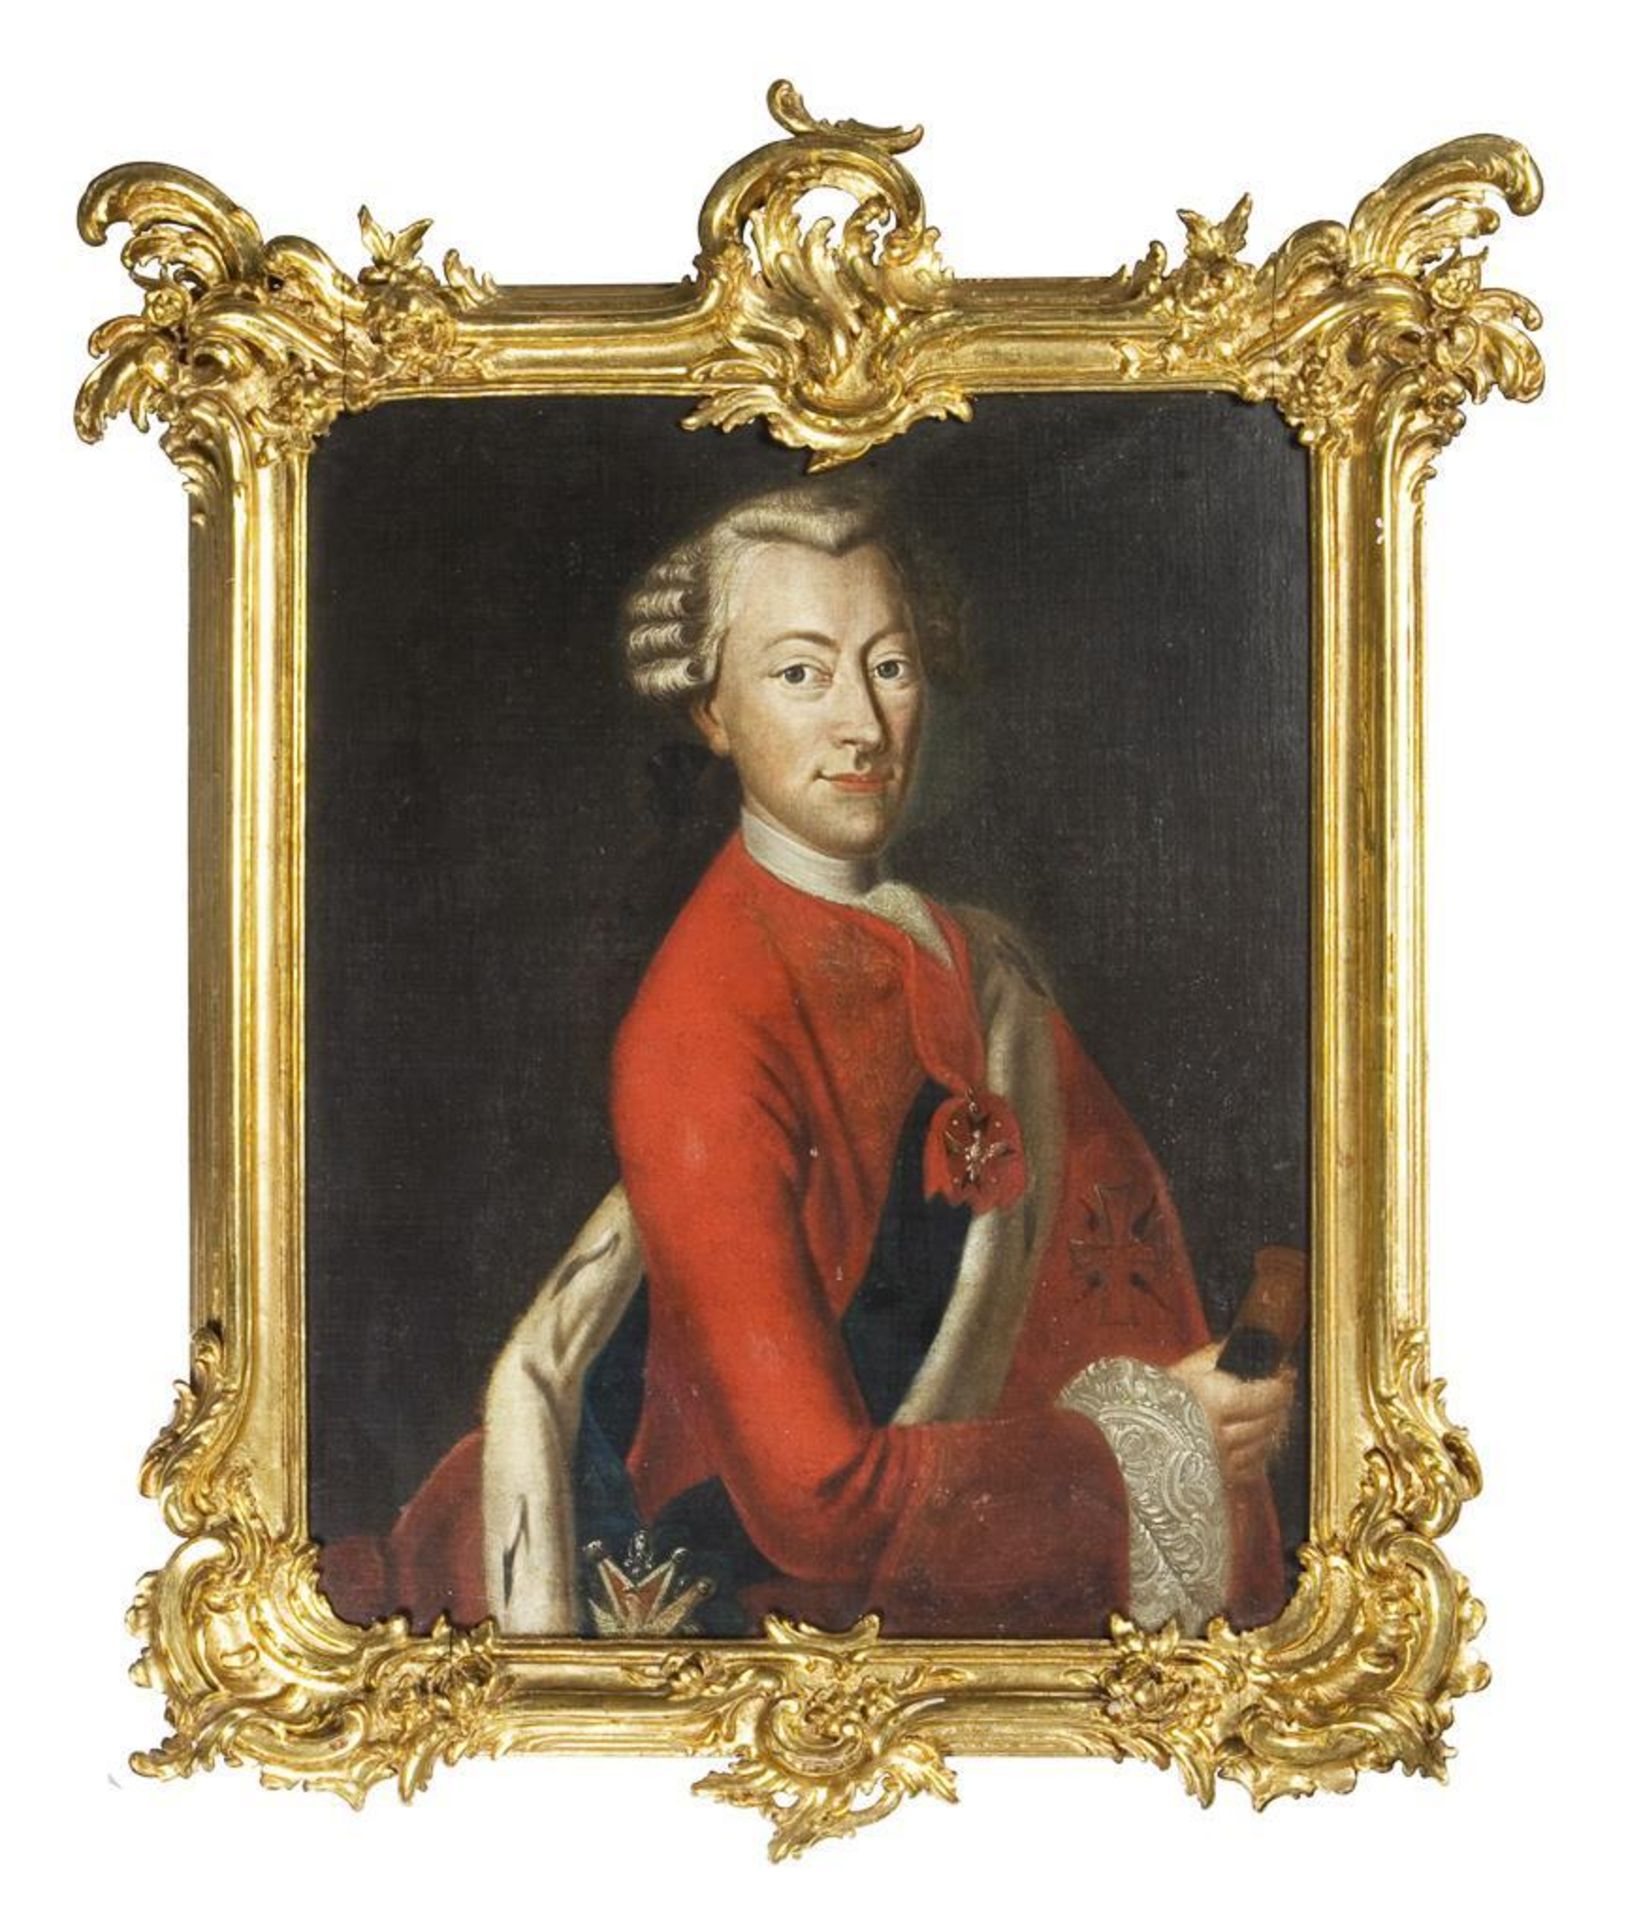 BILDNISMALER MITTE 18. JAHRHUNDERT. Ernst August II. Konstantin Herzog von Sachsen-Weimar-Eisenach.